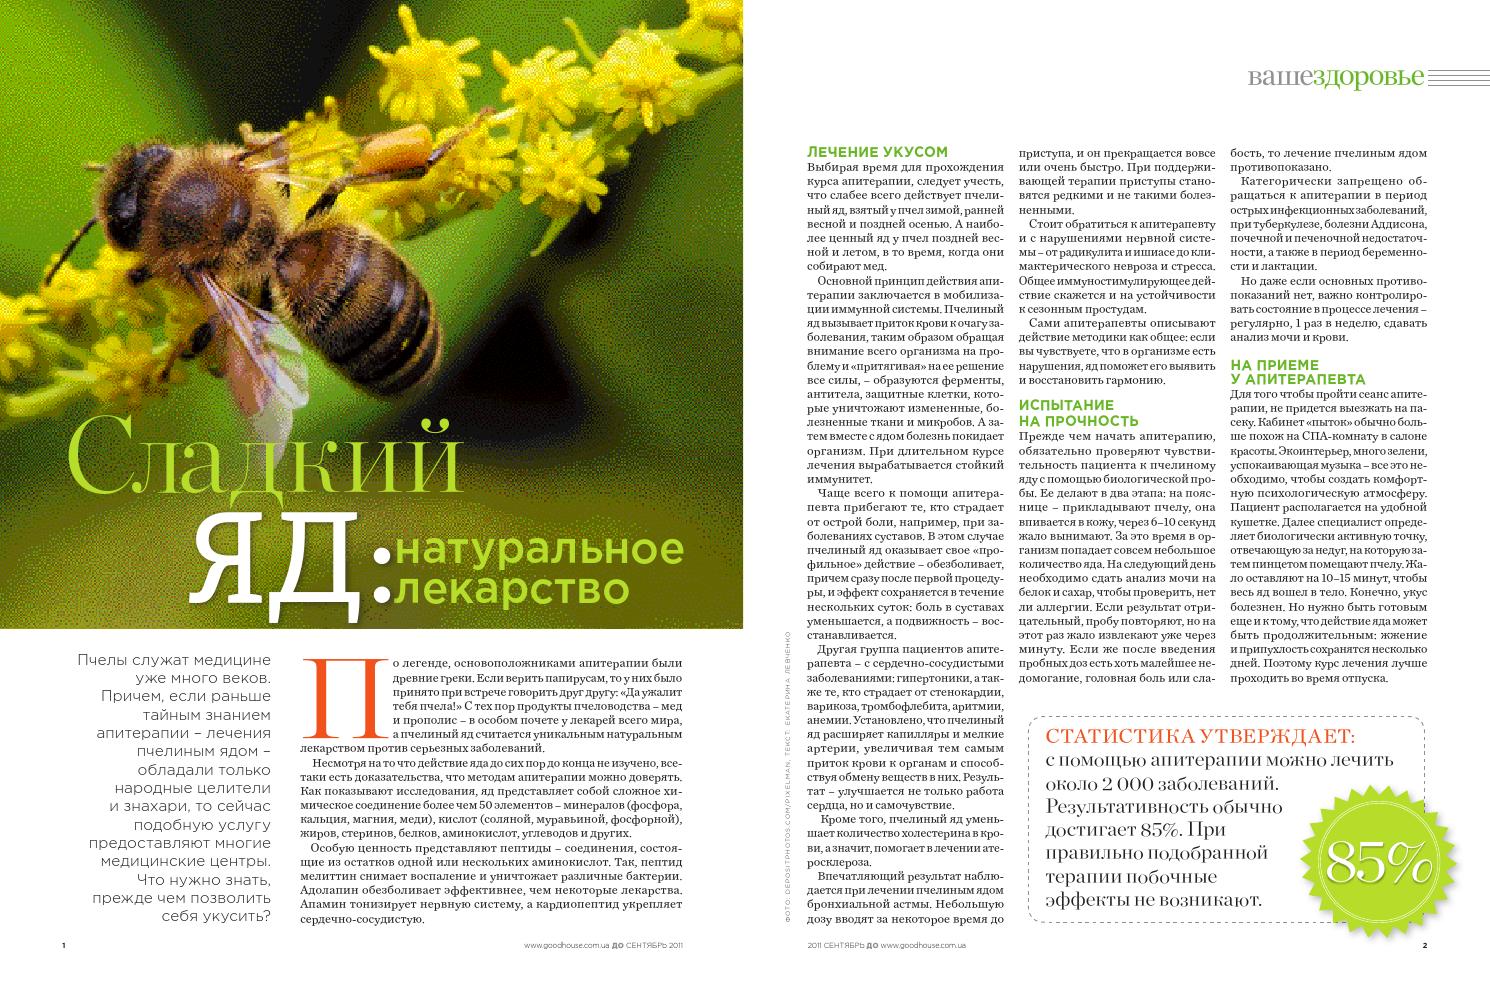 Лечение укусами пчёл – апитерапия в домашних условиях